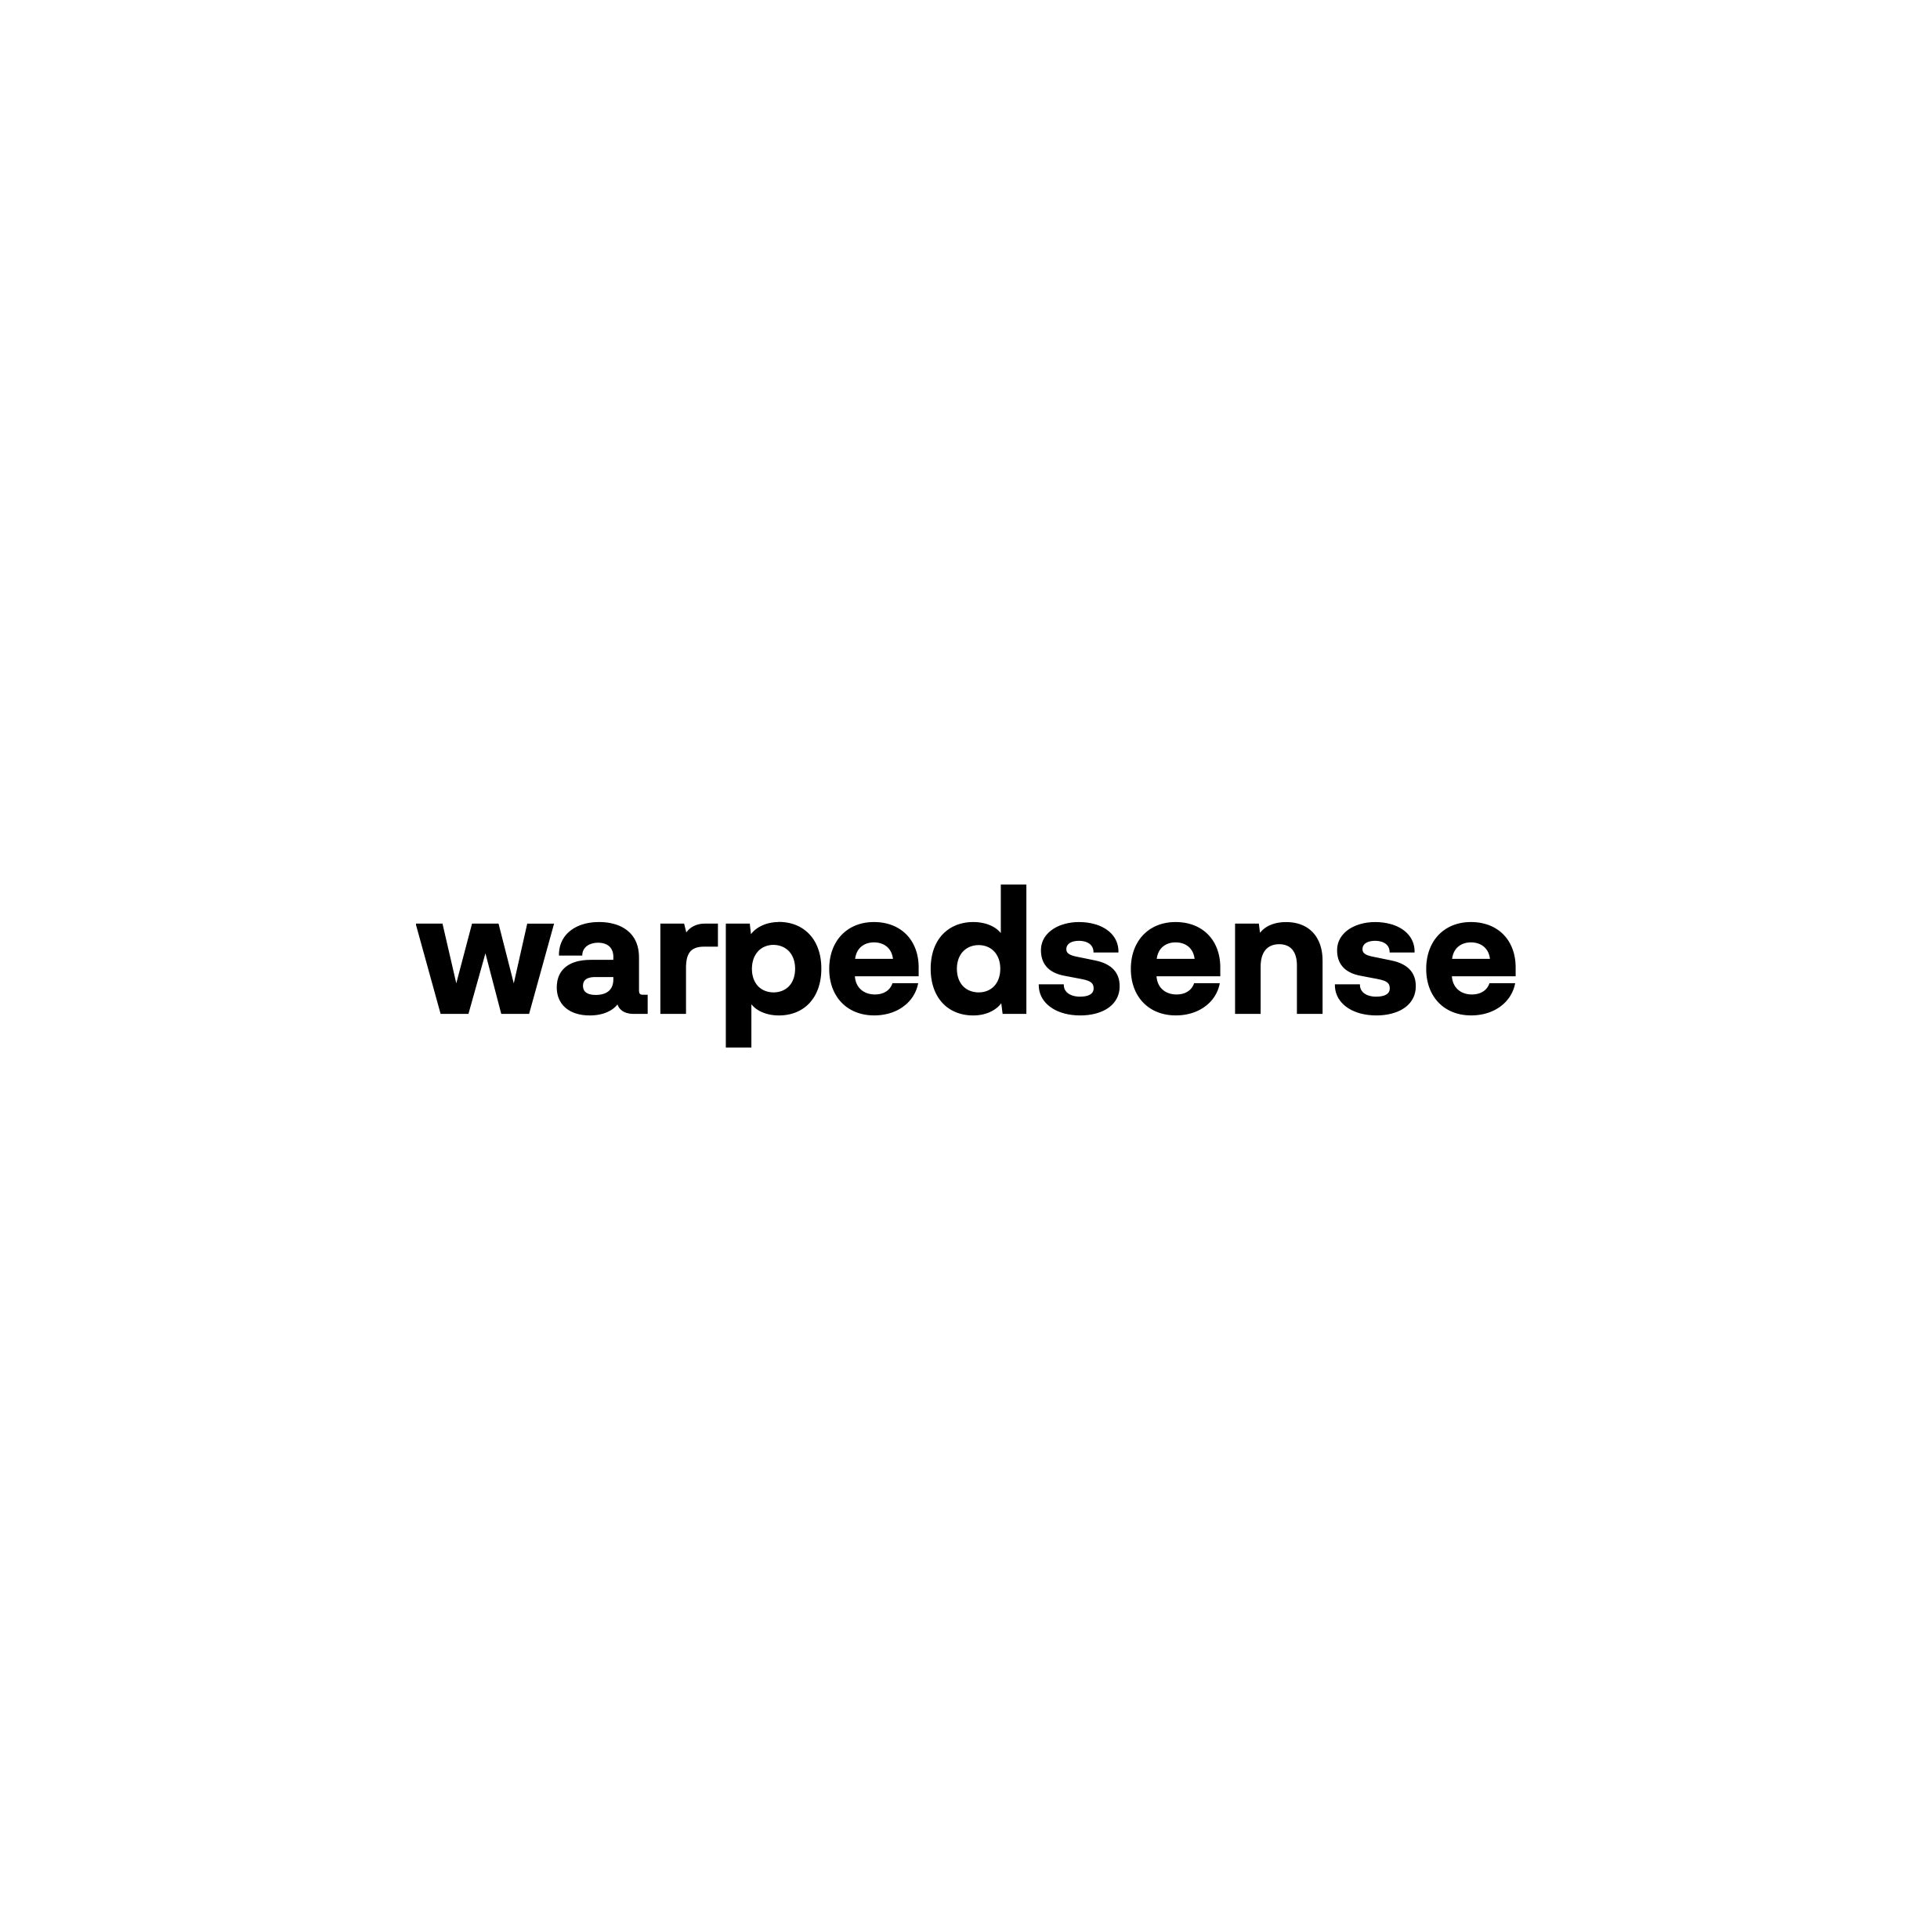 (c) Warpedsense.com